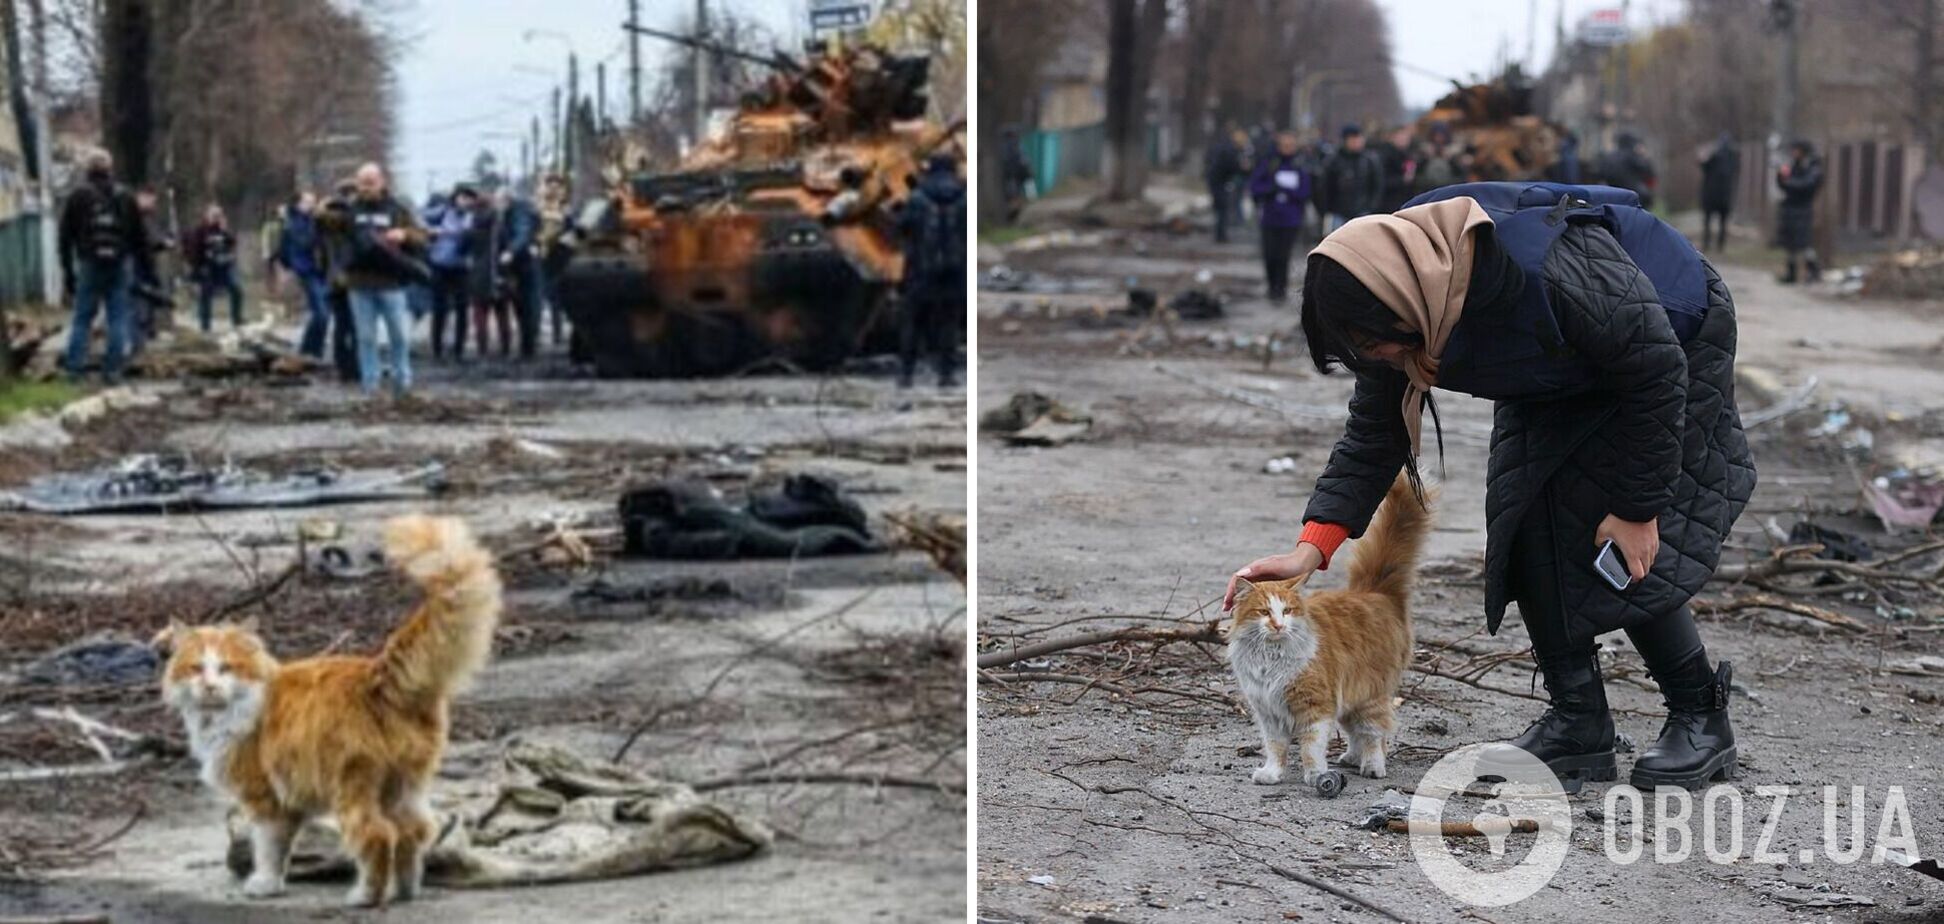 Стало известно, кто из украинских звезд оказался хозяином рыжего котика, позировавшего на фото из разрушенной Бучи